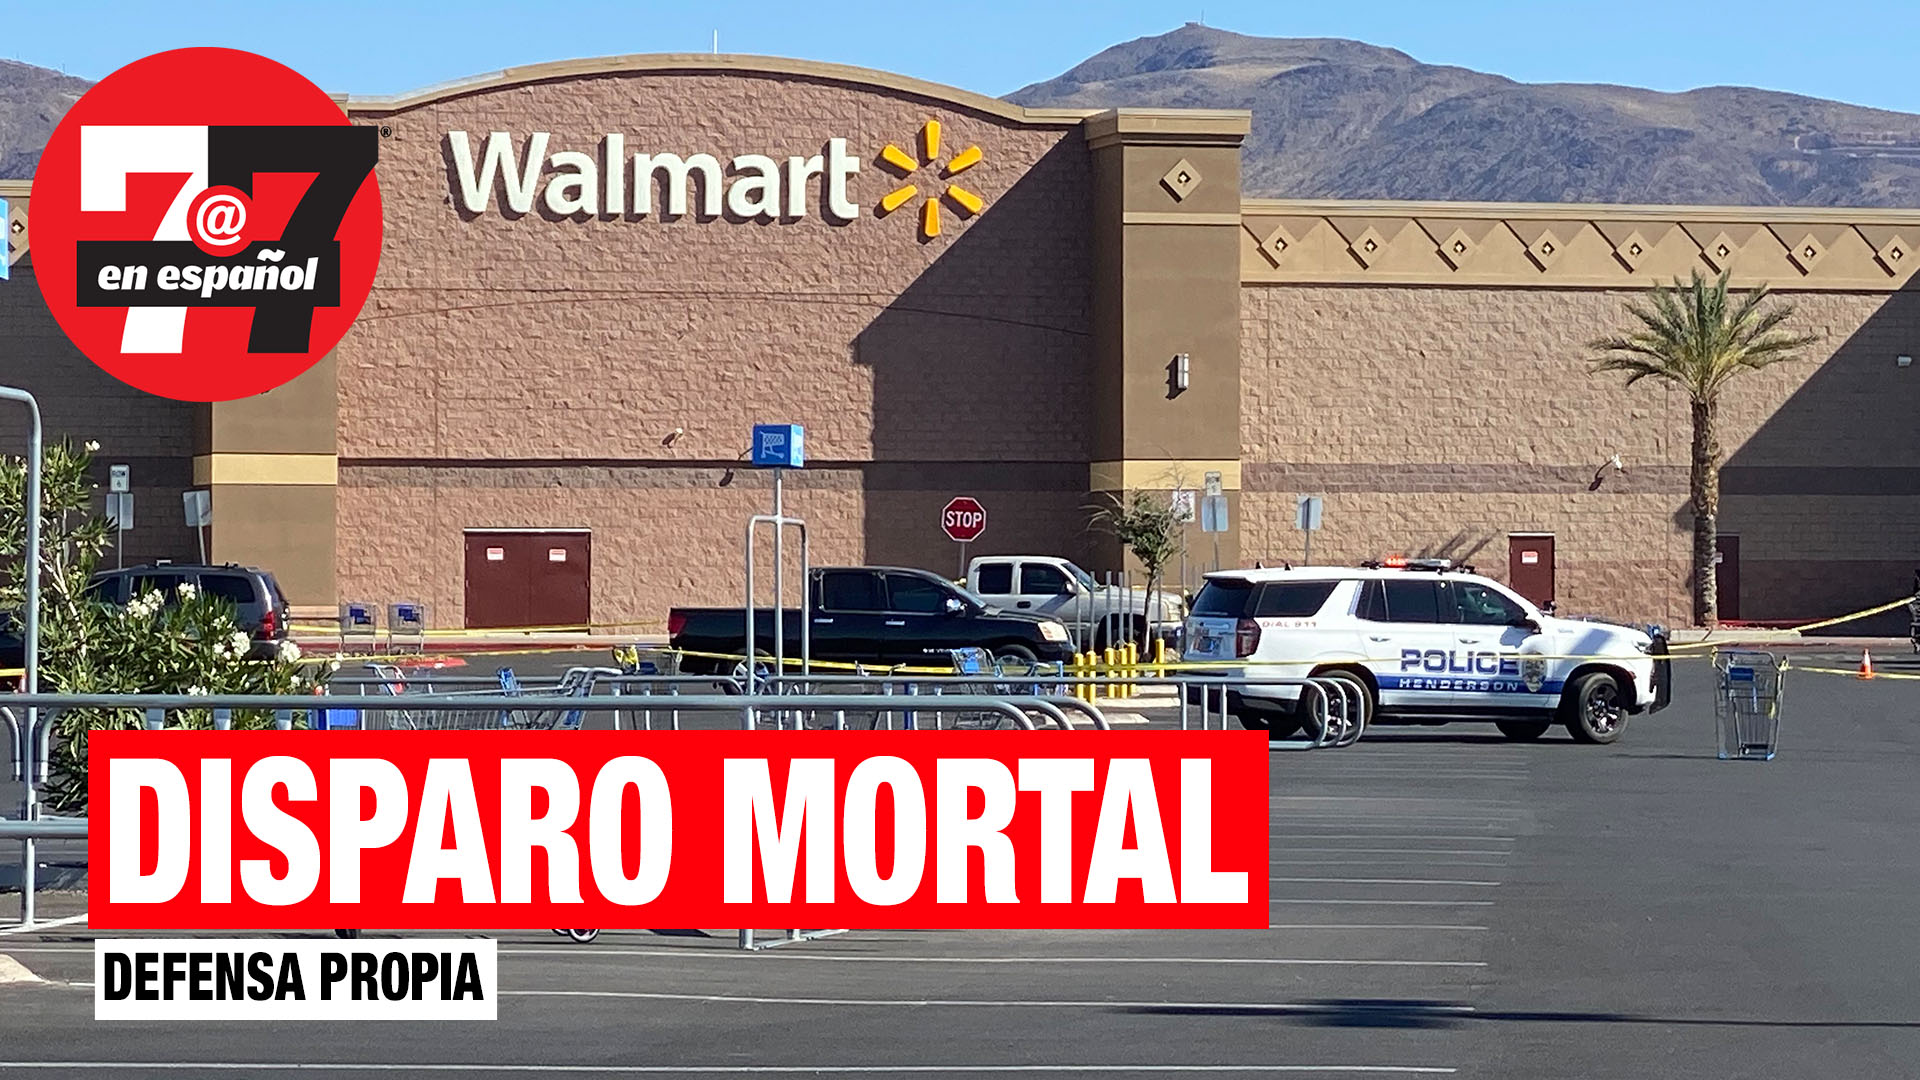 Noticias de Las Vegas | Hombre disparó a otro en defensa propia en Walmart